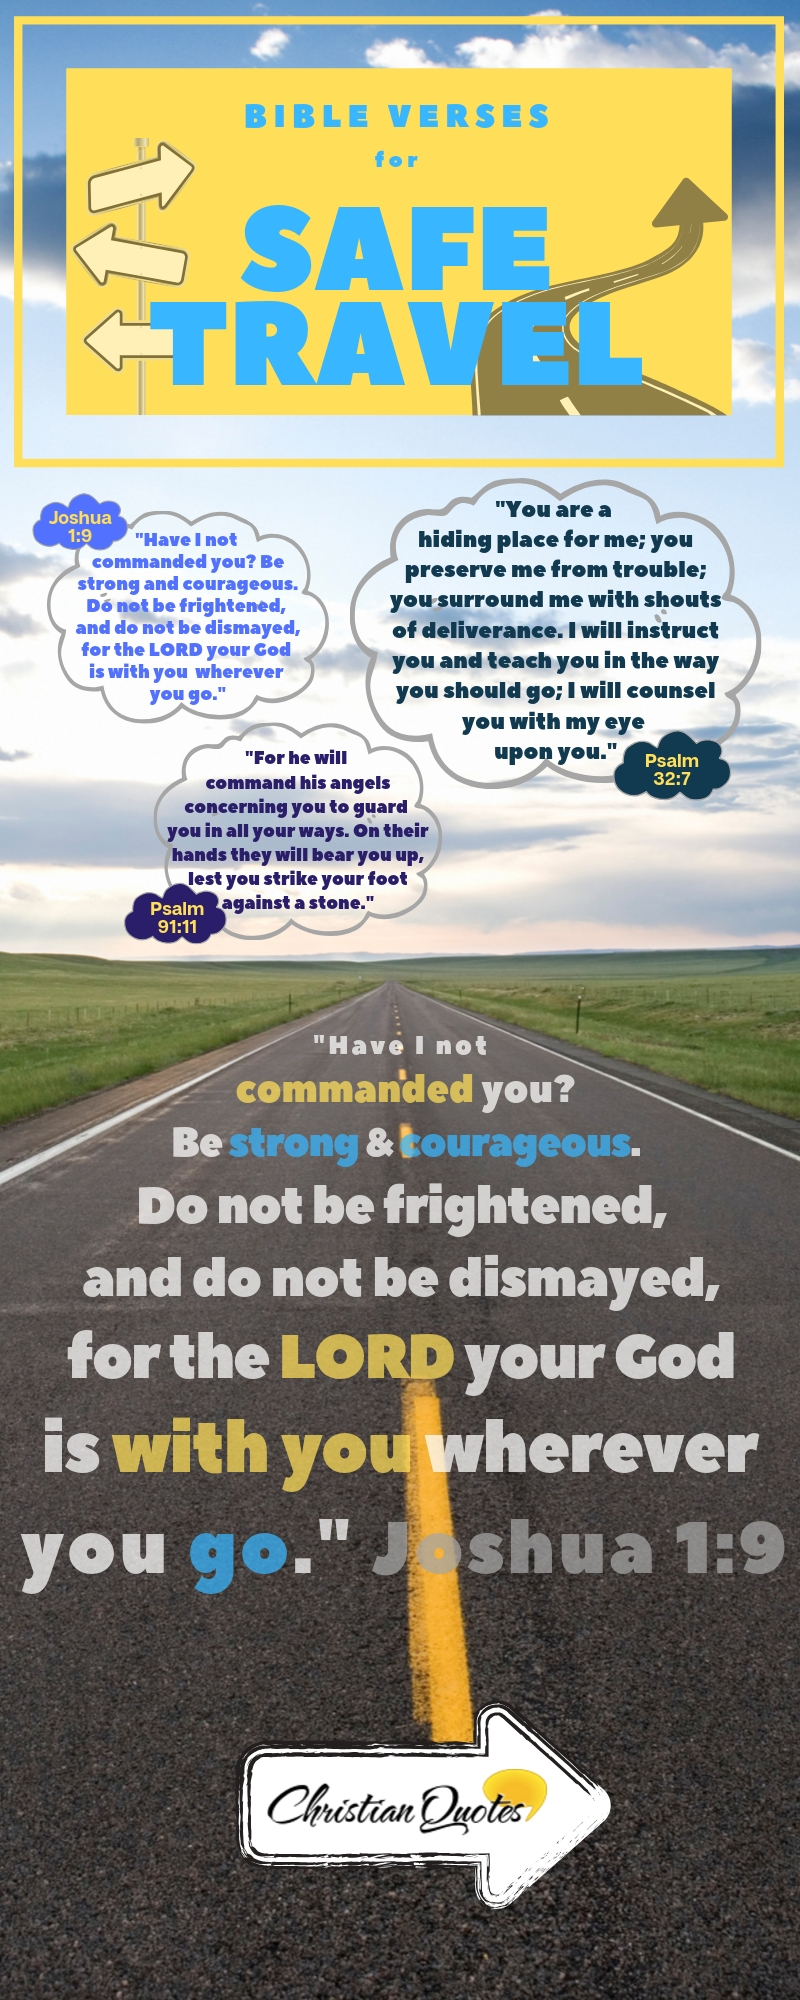 safe travel bible verses